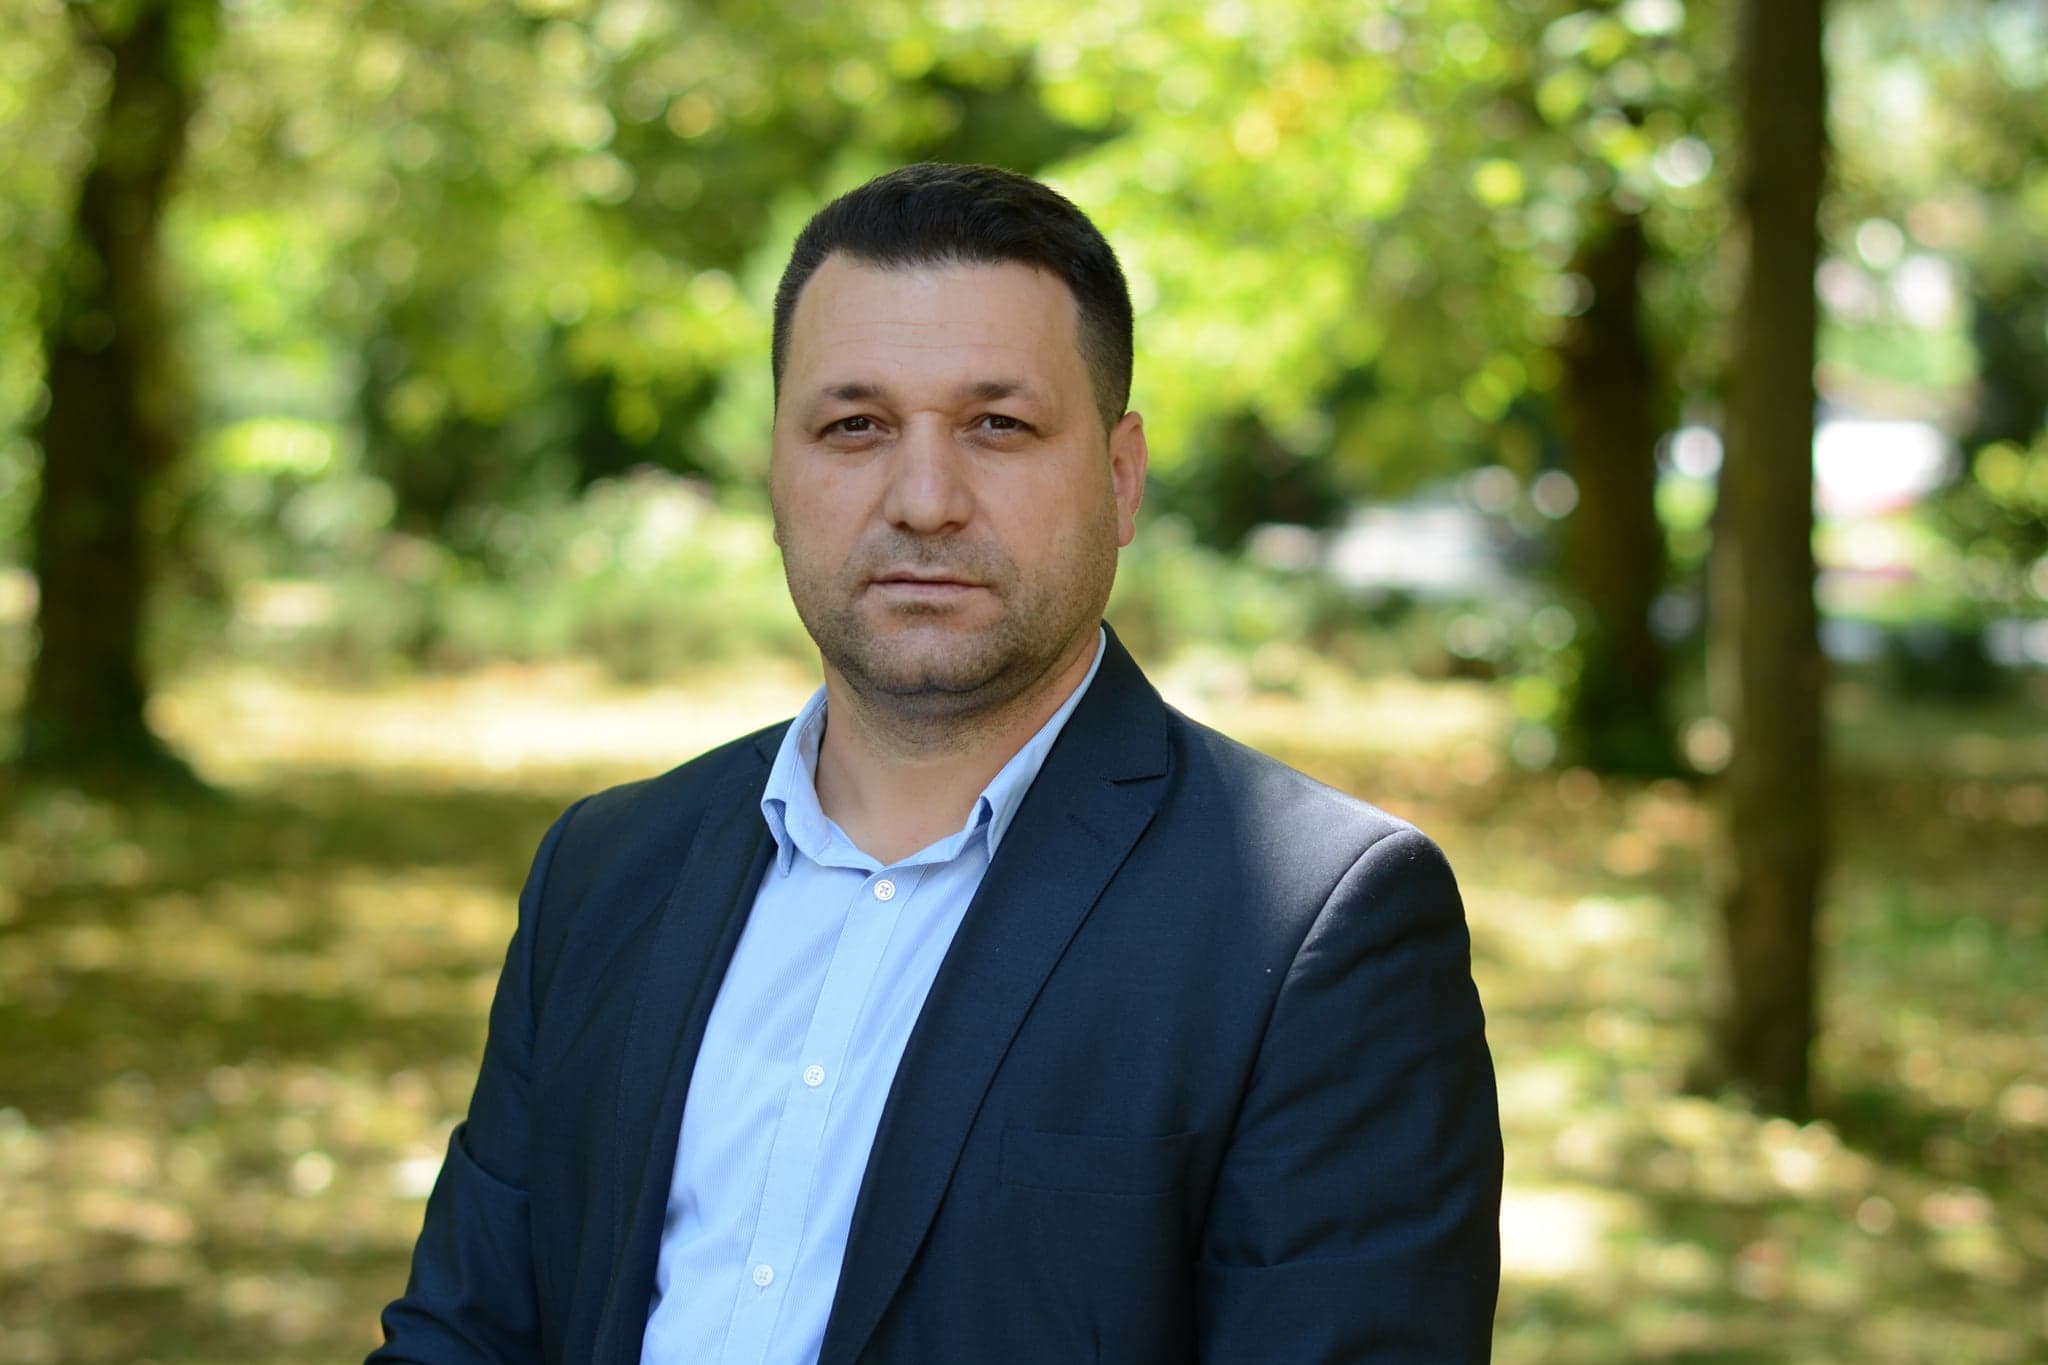 Bugetul localităţii Goleşti, orientat către investiţii, spune primarul Adrian Mitrache